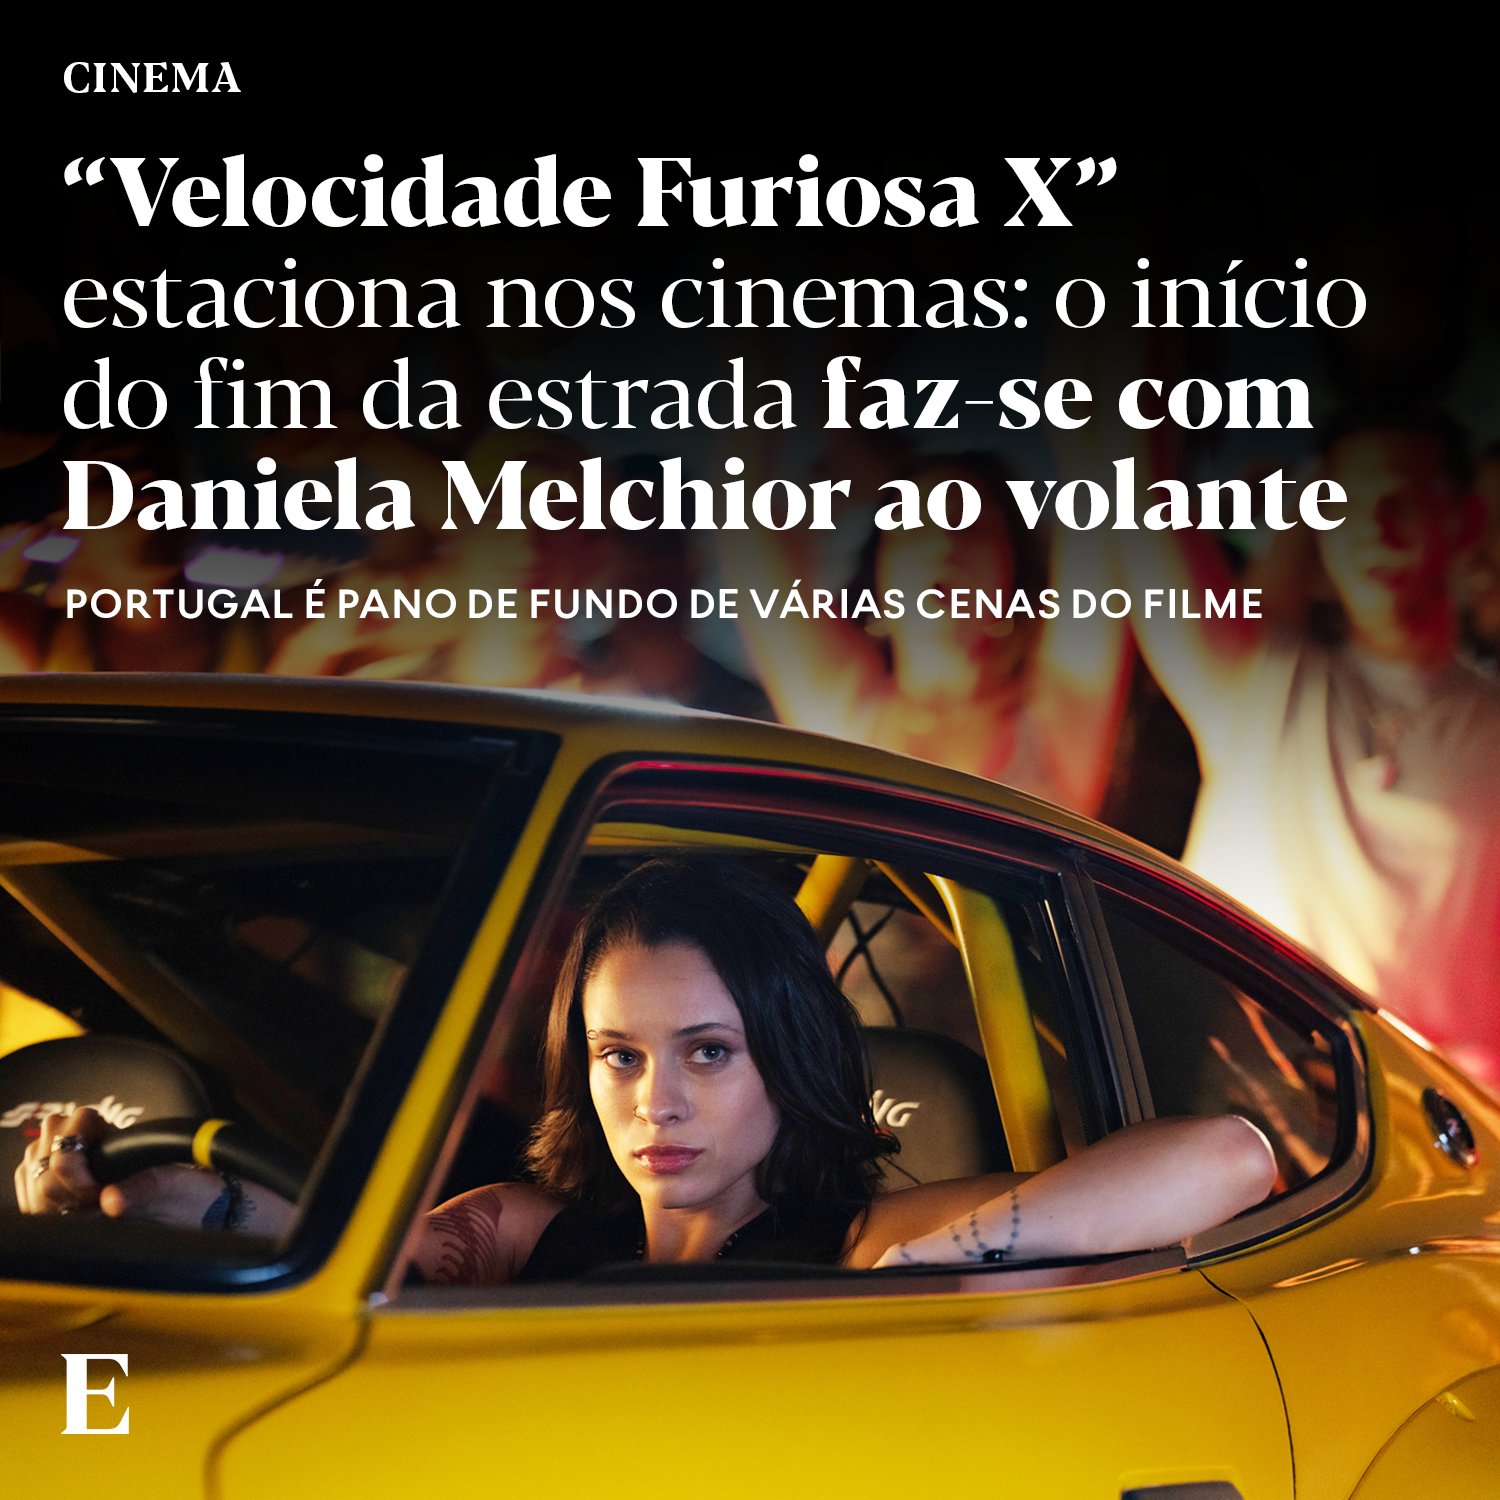 Daniela Melchior vai participar no novo filme de Velocidade Furiosa